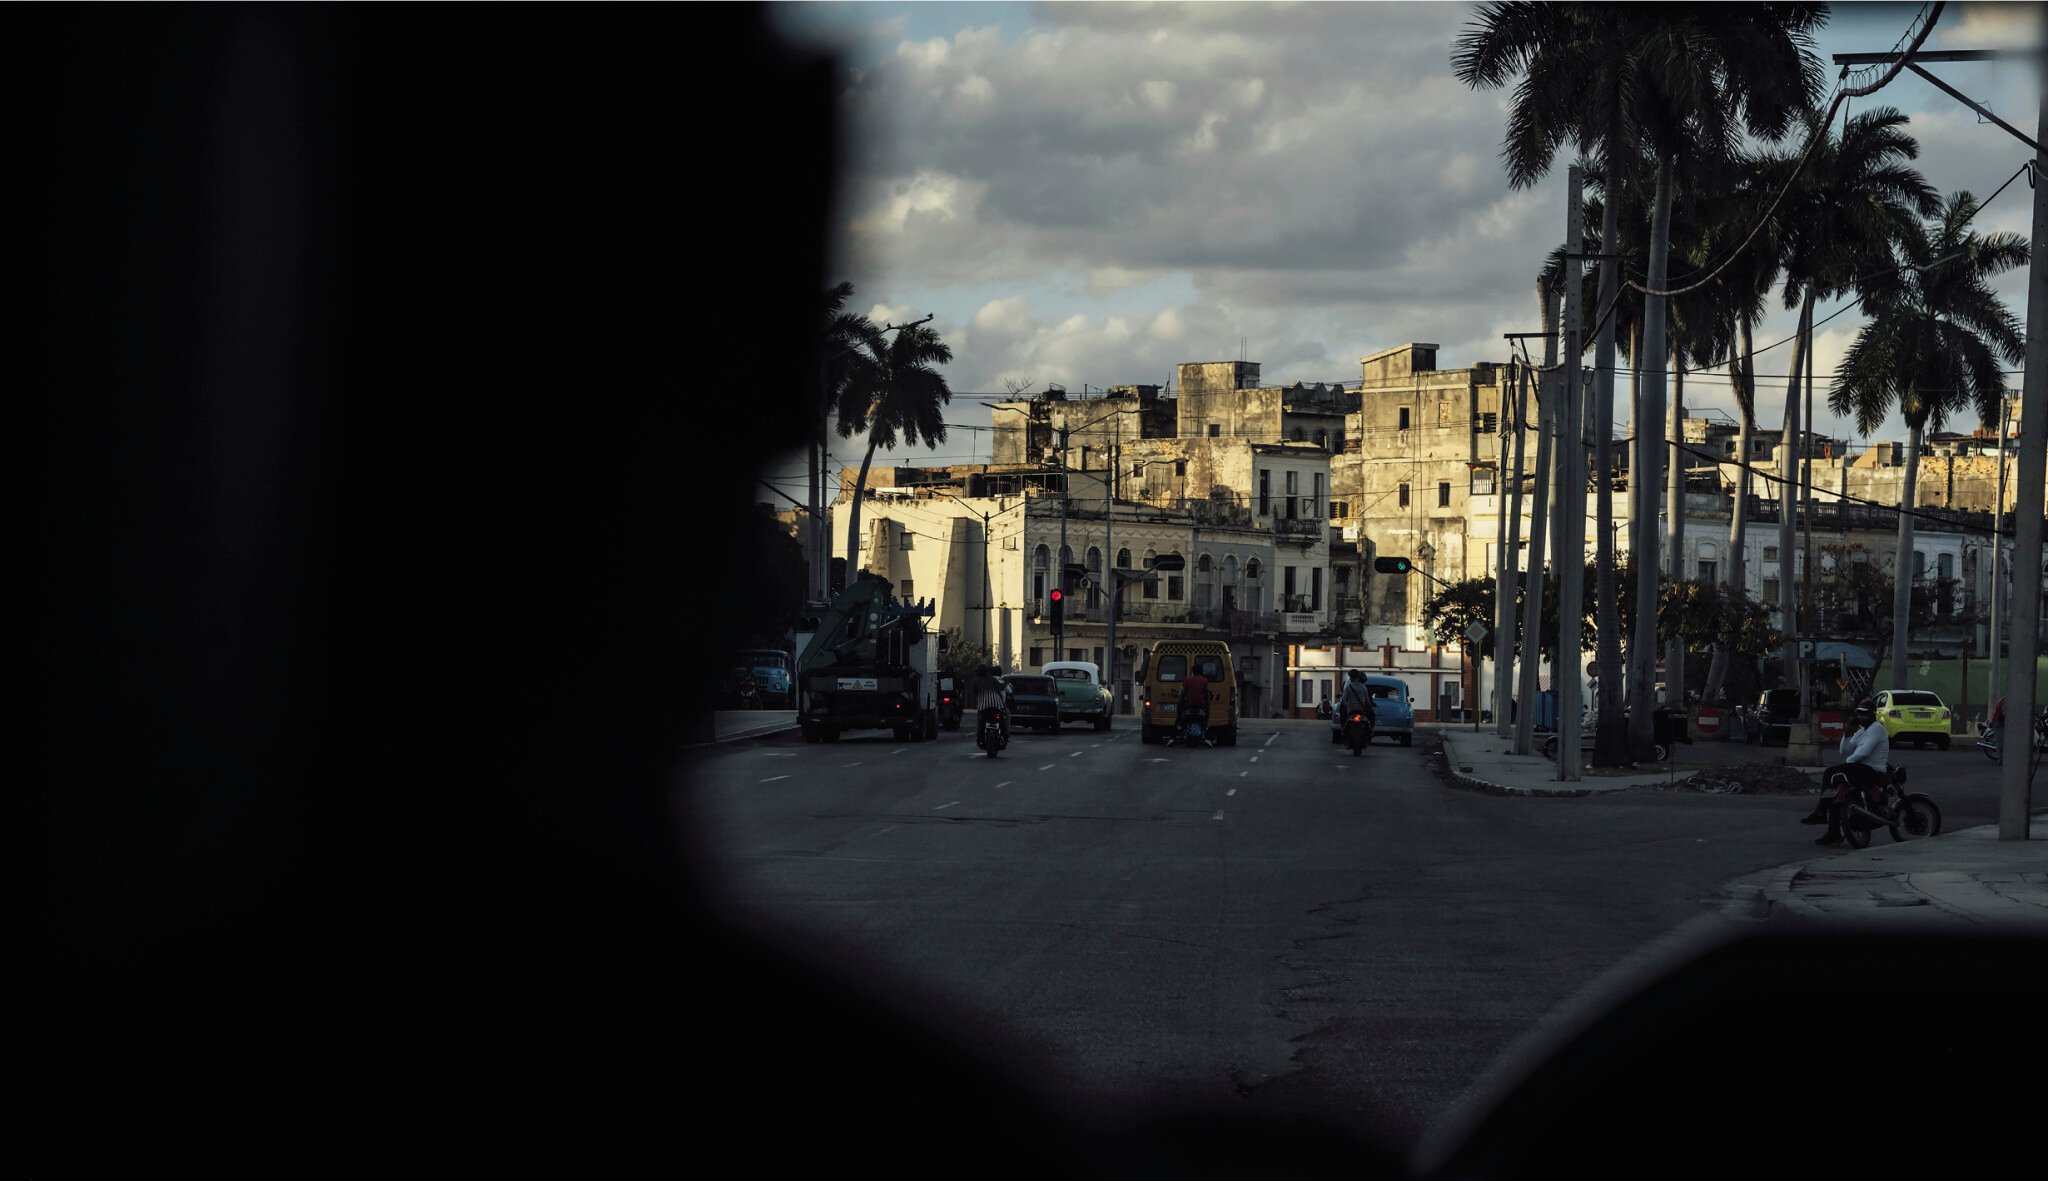 El espíritu. Duch Kuby na šesti nevšedních snímcích